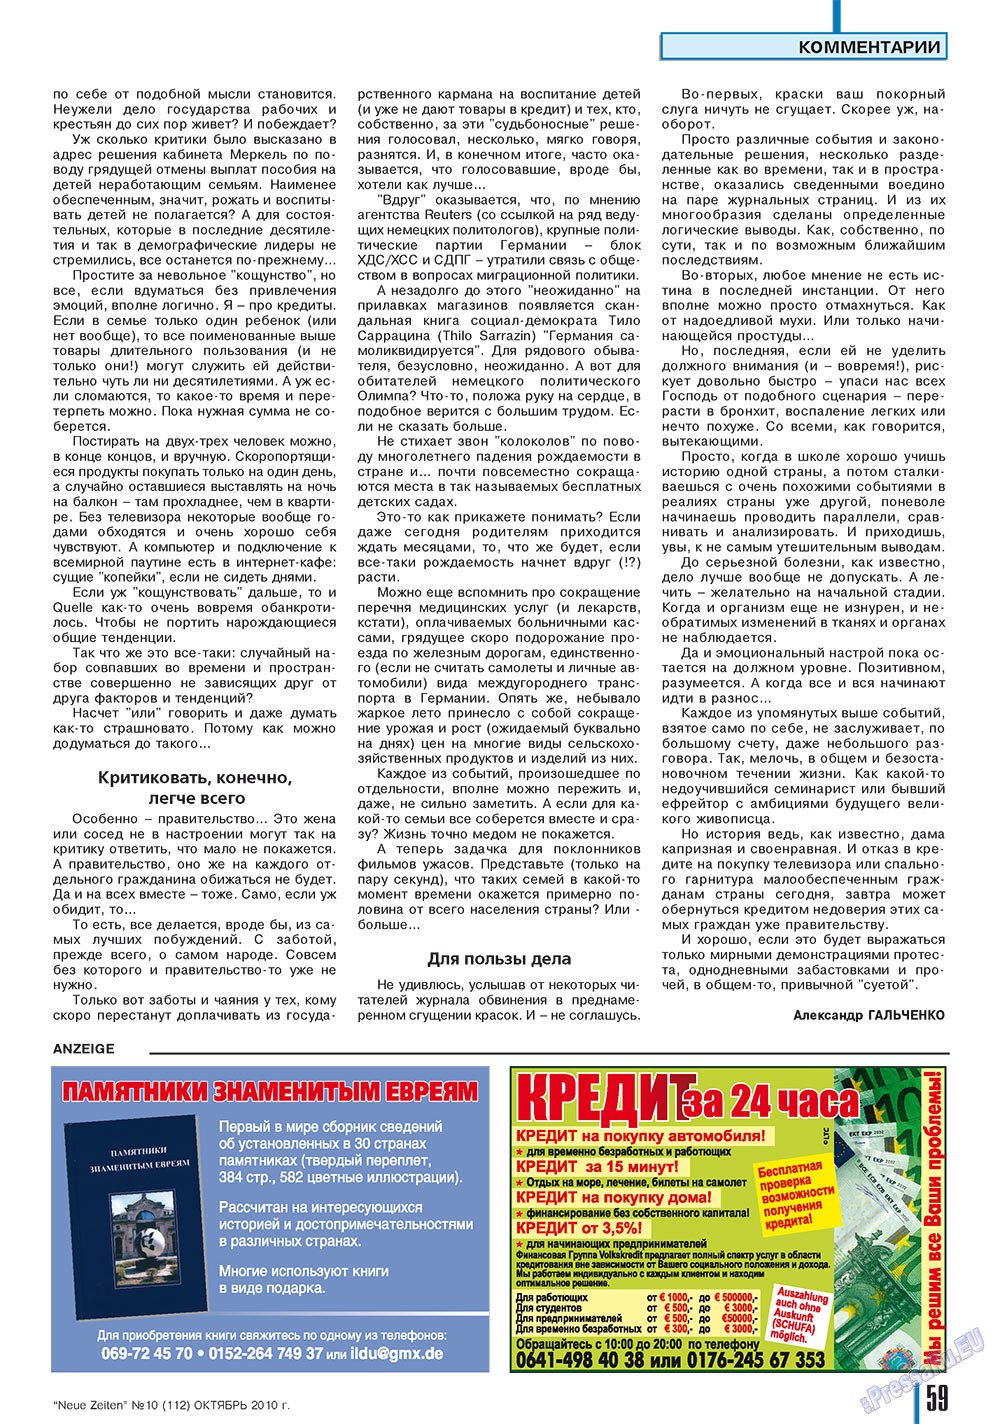 Neue Zeiten, журнал. 2010 №10 стр.59